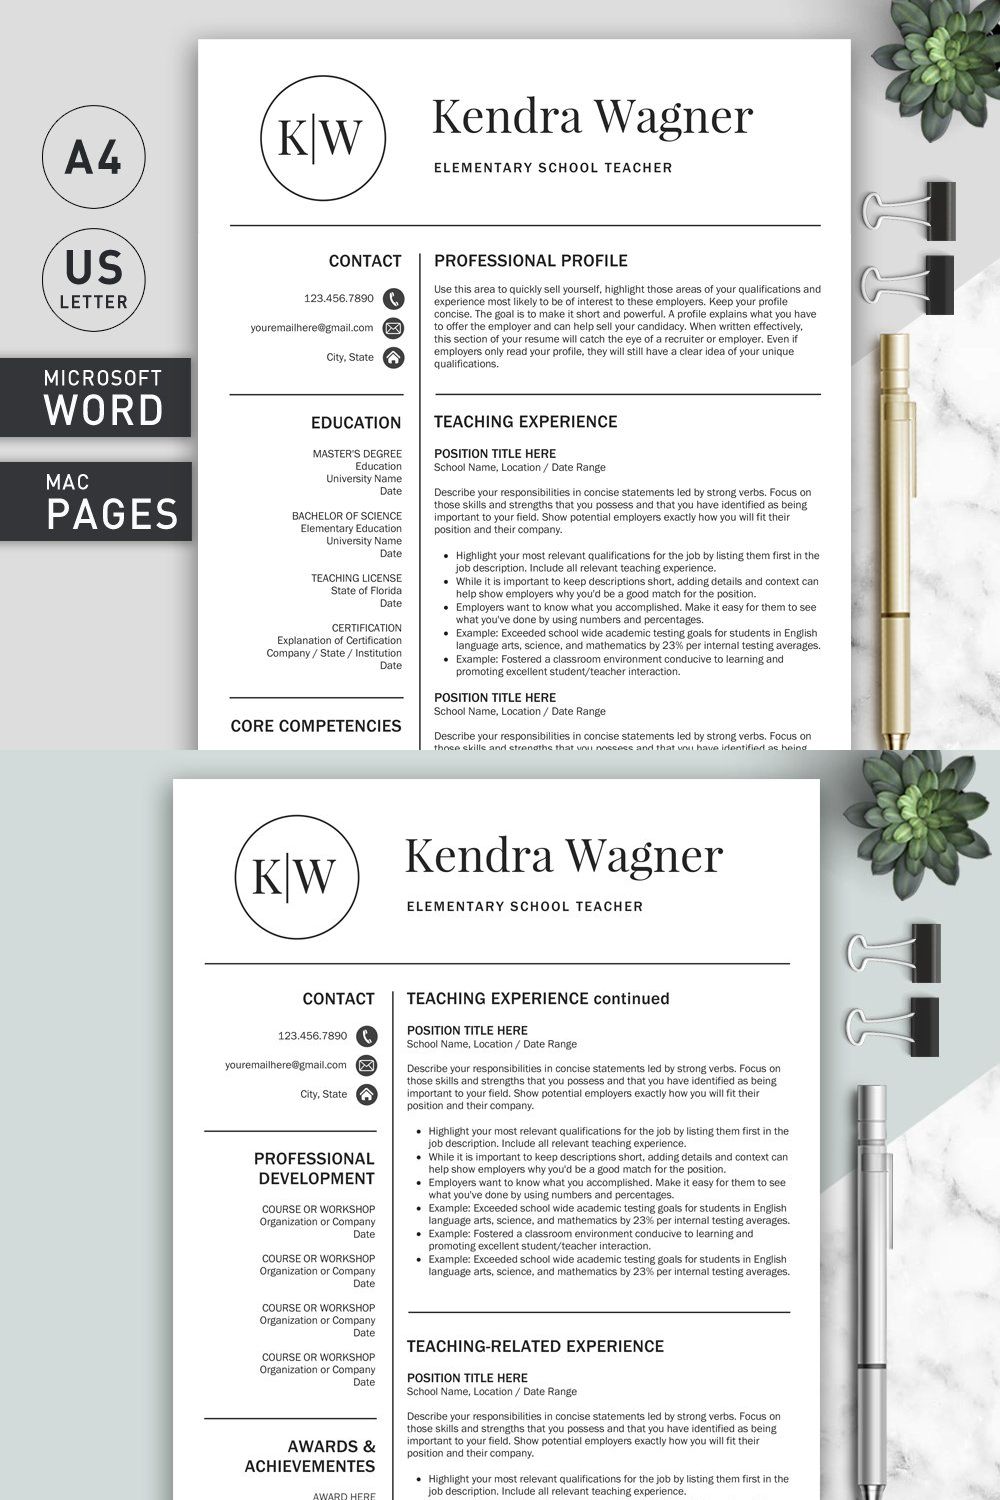 Resume/CV | Teacher pinterest preview image.